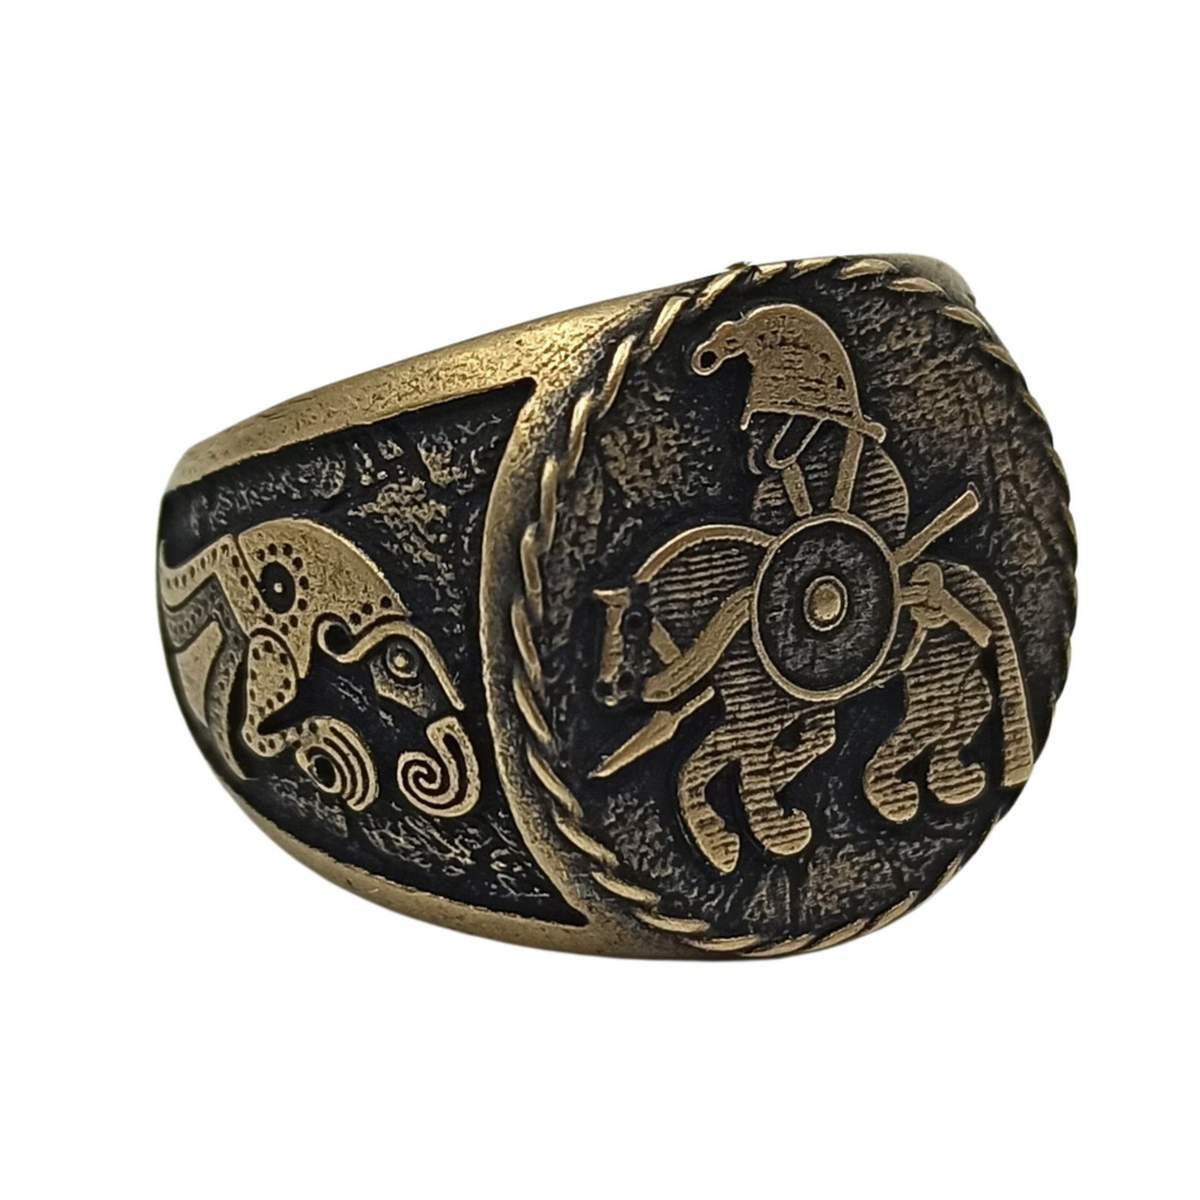 Horseman from Vendel plates signet bronze ring